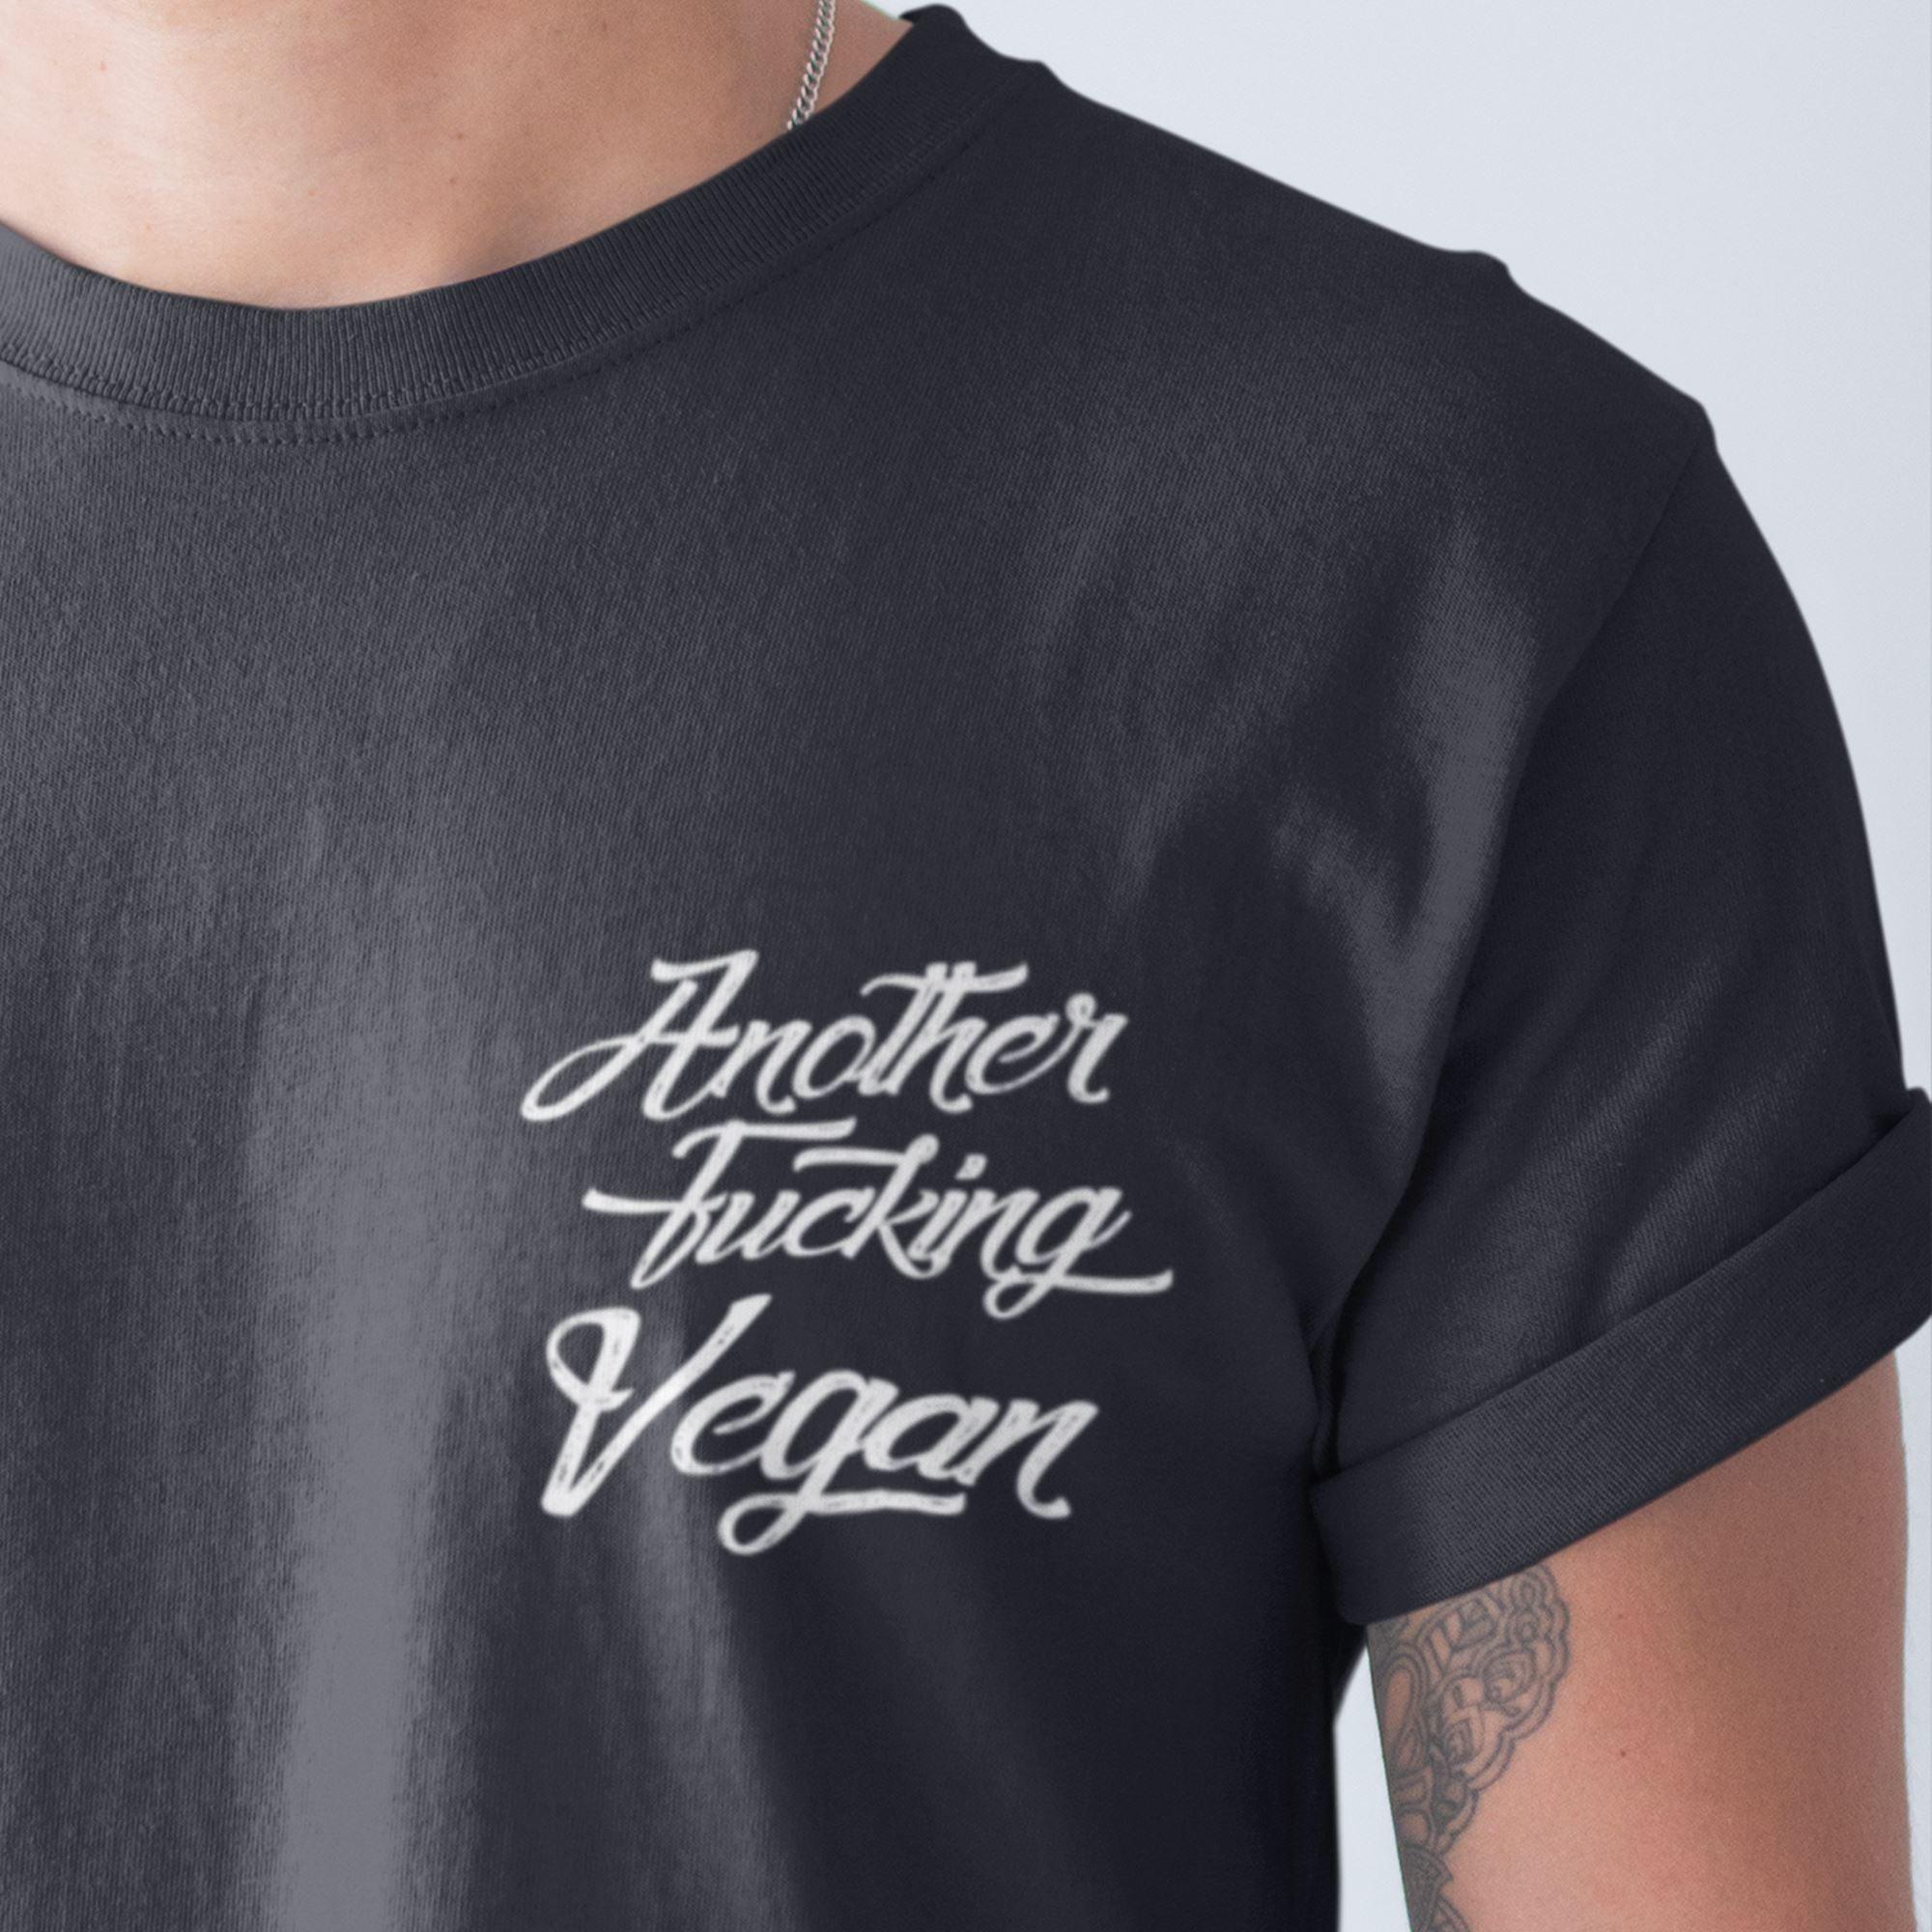 Another fucking vegan - Unisex Organic Shirt Rocker T-Shirt ST/ST Shirtee 